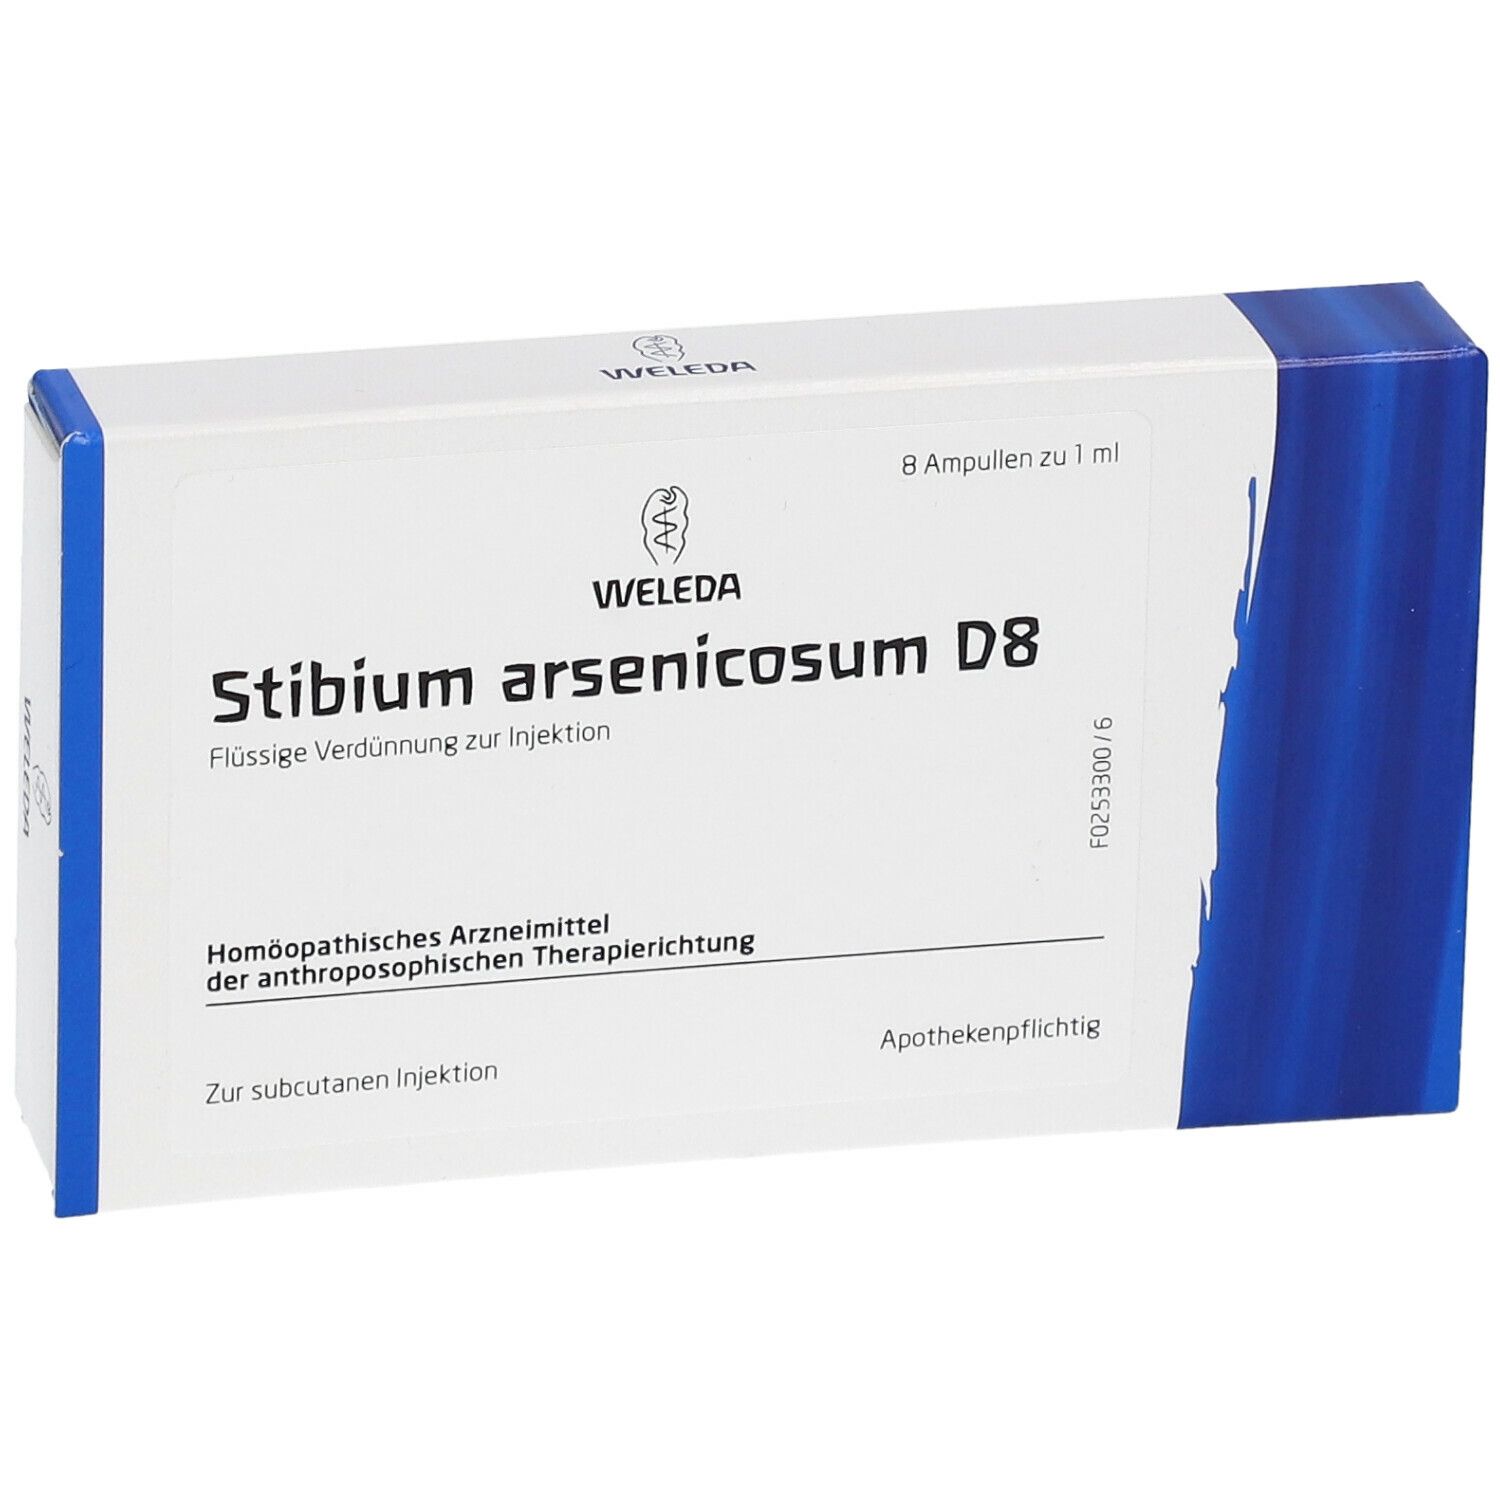 Stibium Arsenicosum D8 Ampullen